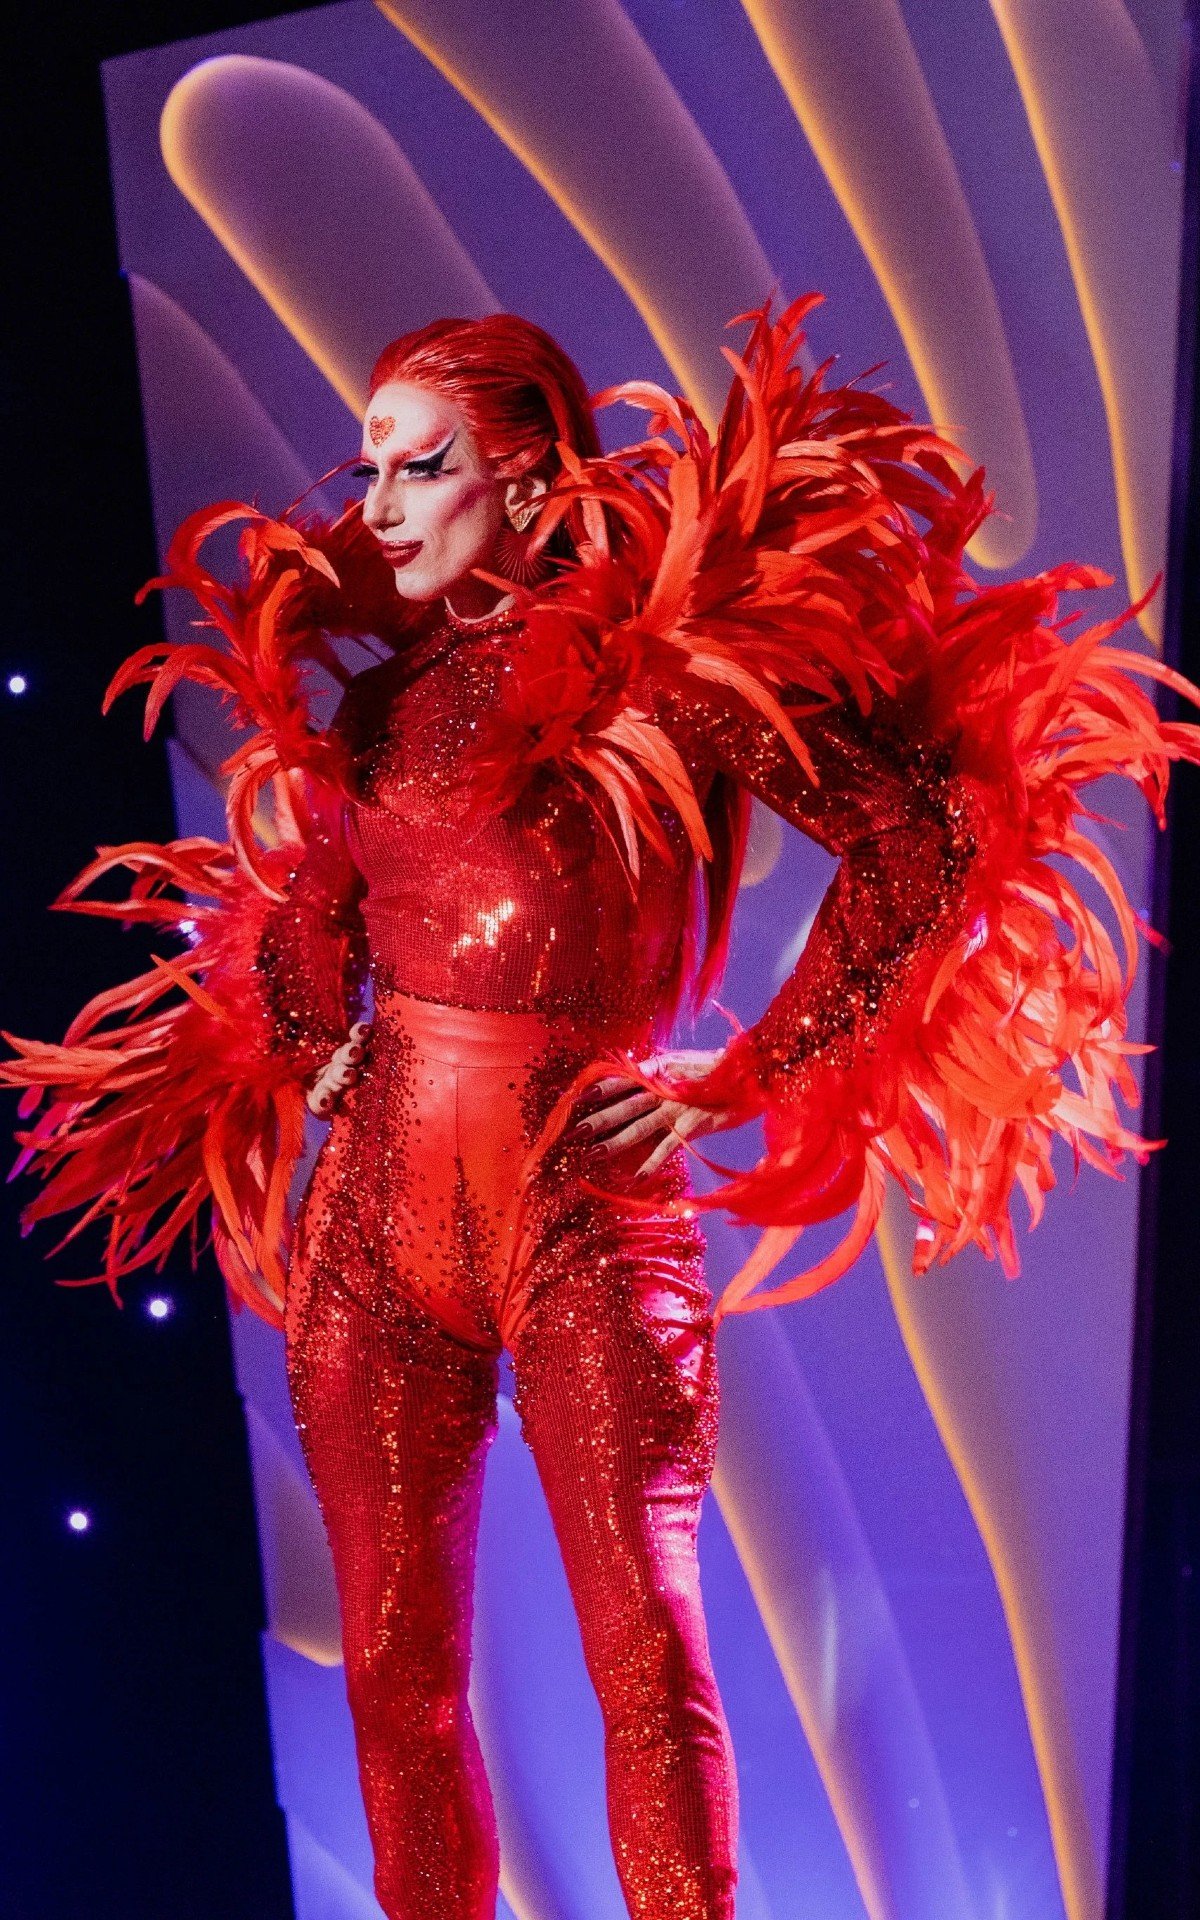 betina polaroid - drag queen - vermelho - primavera verão inverno outono - drag race br - https://stealthelook.com.br